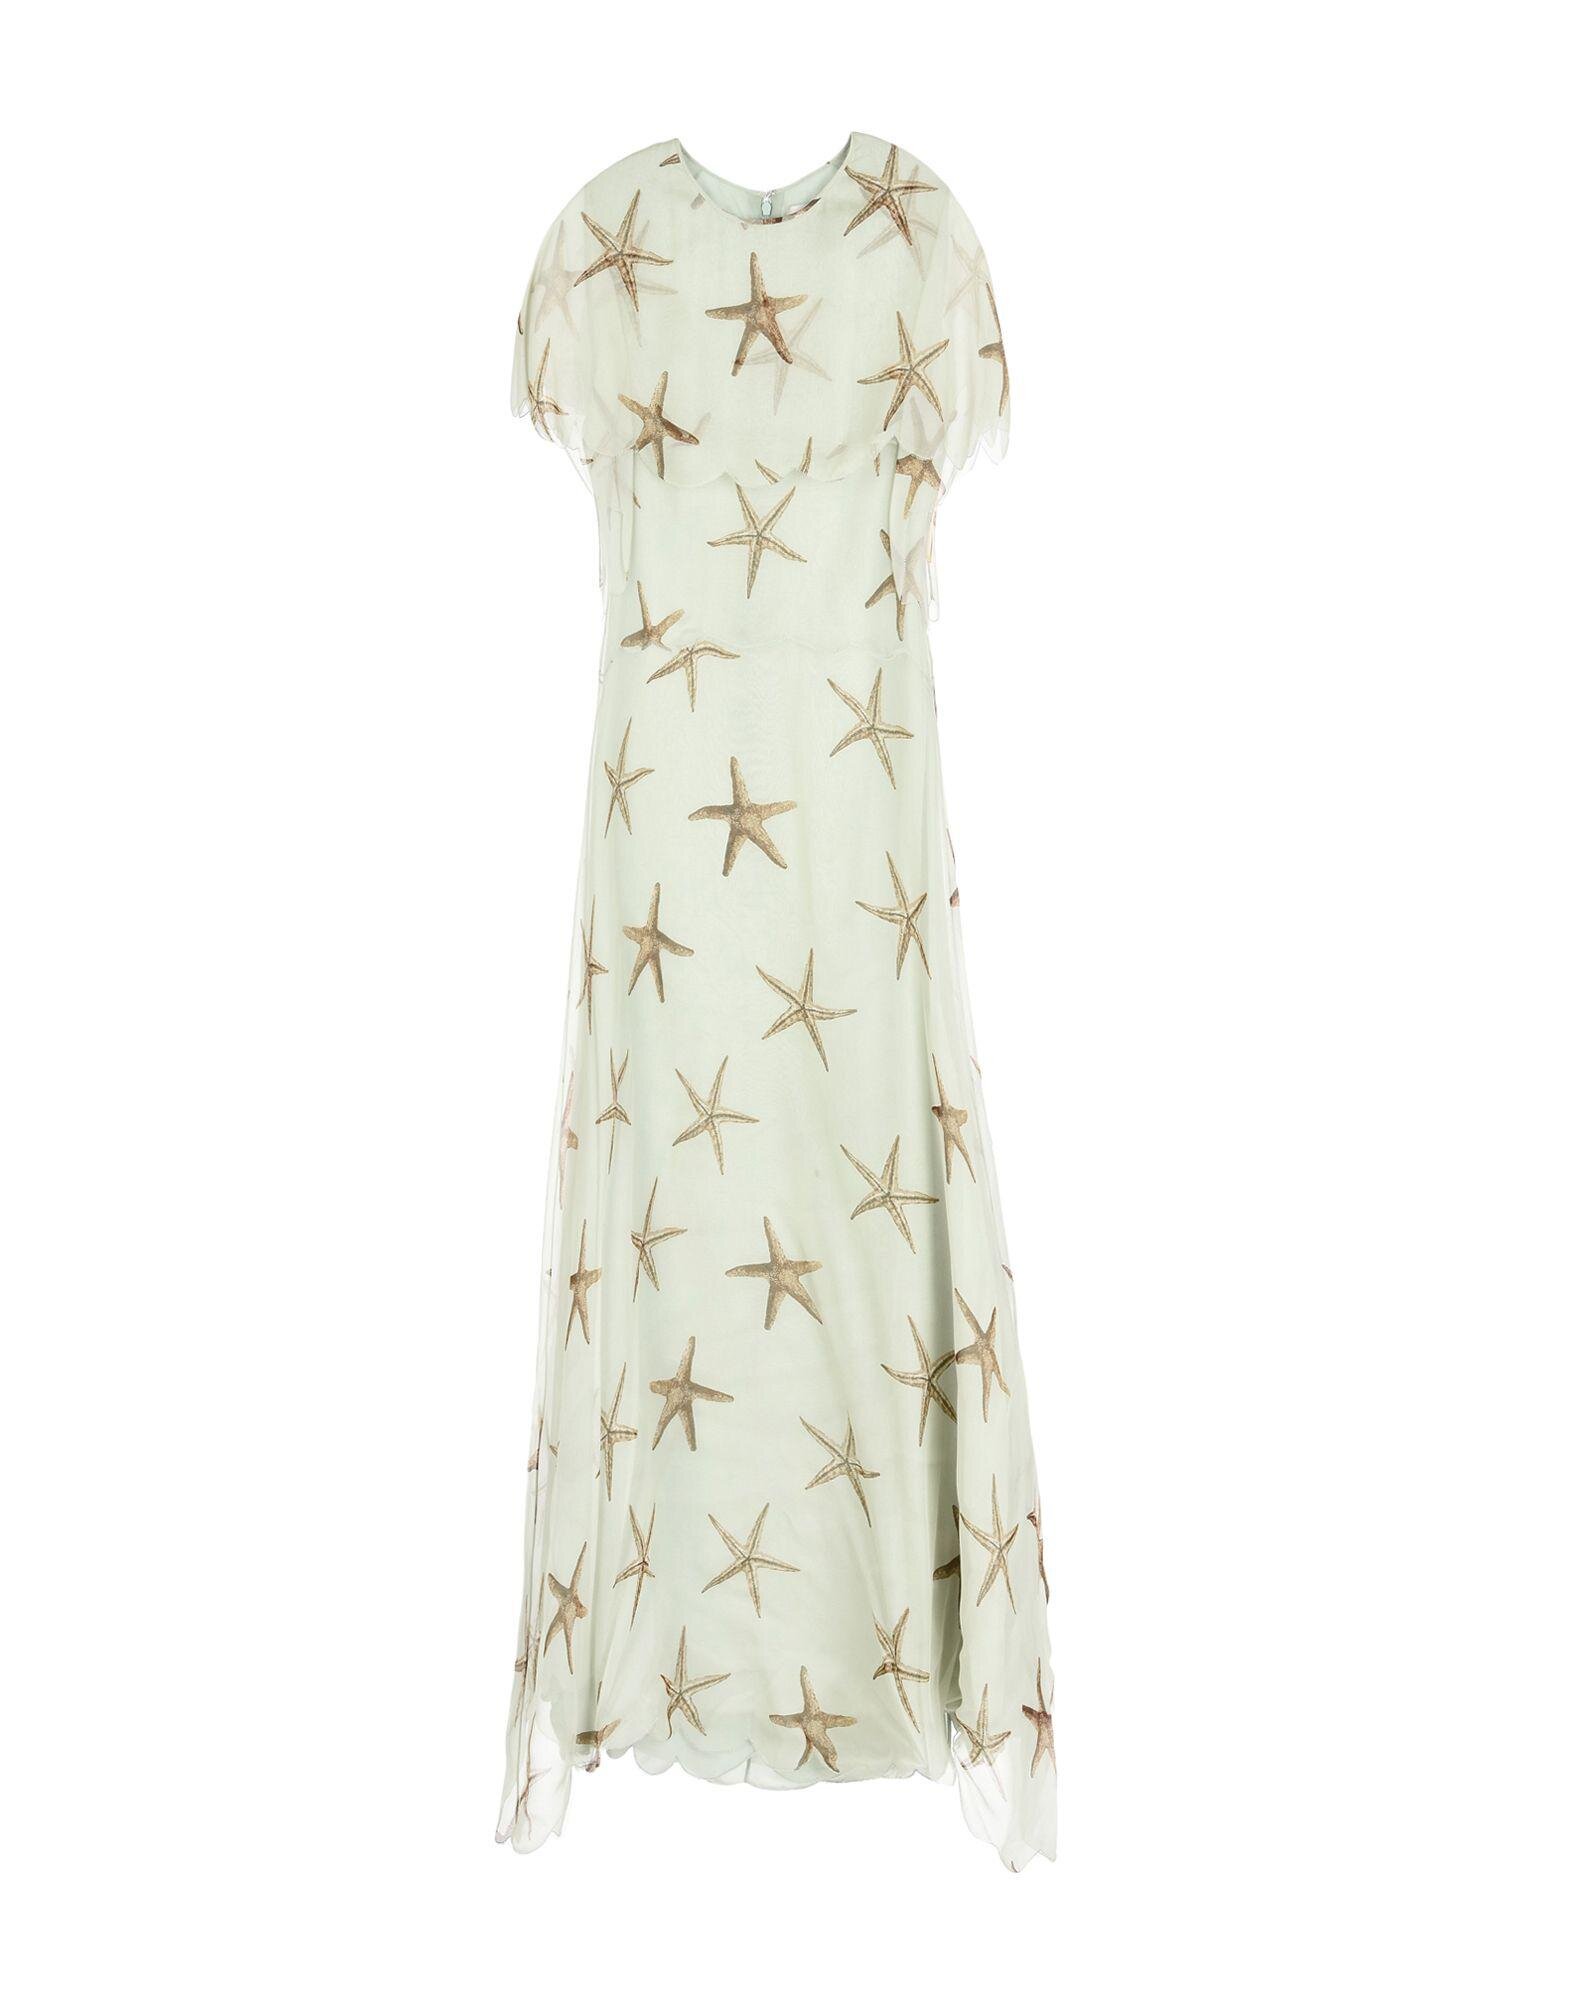 Valentino Starfish Print Dress.jpg